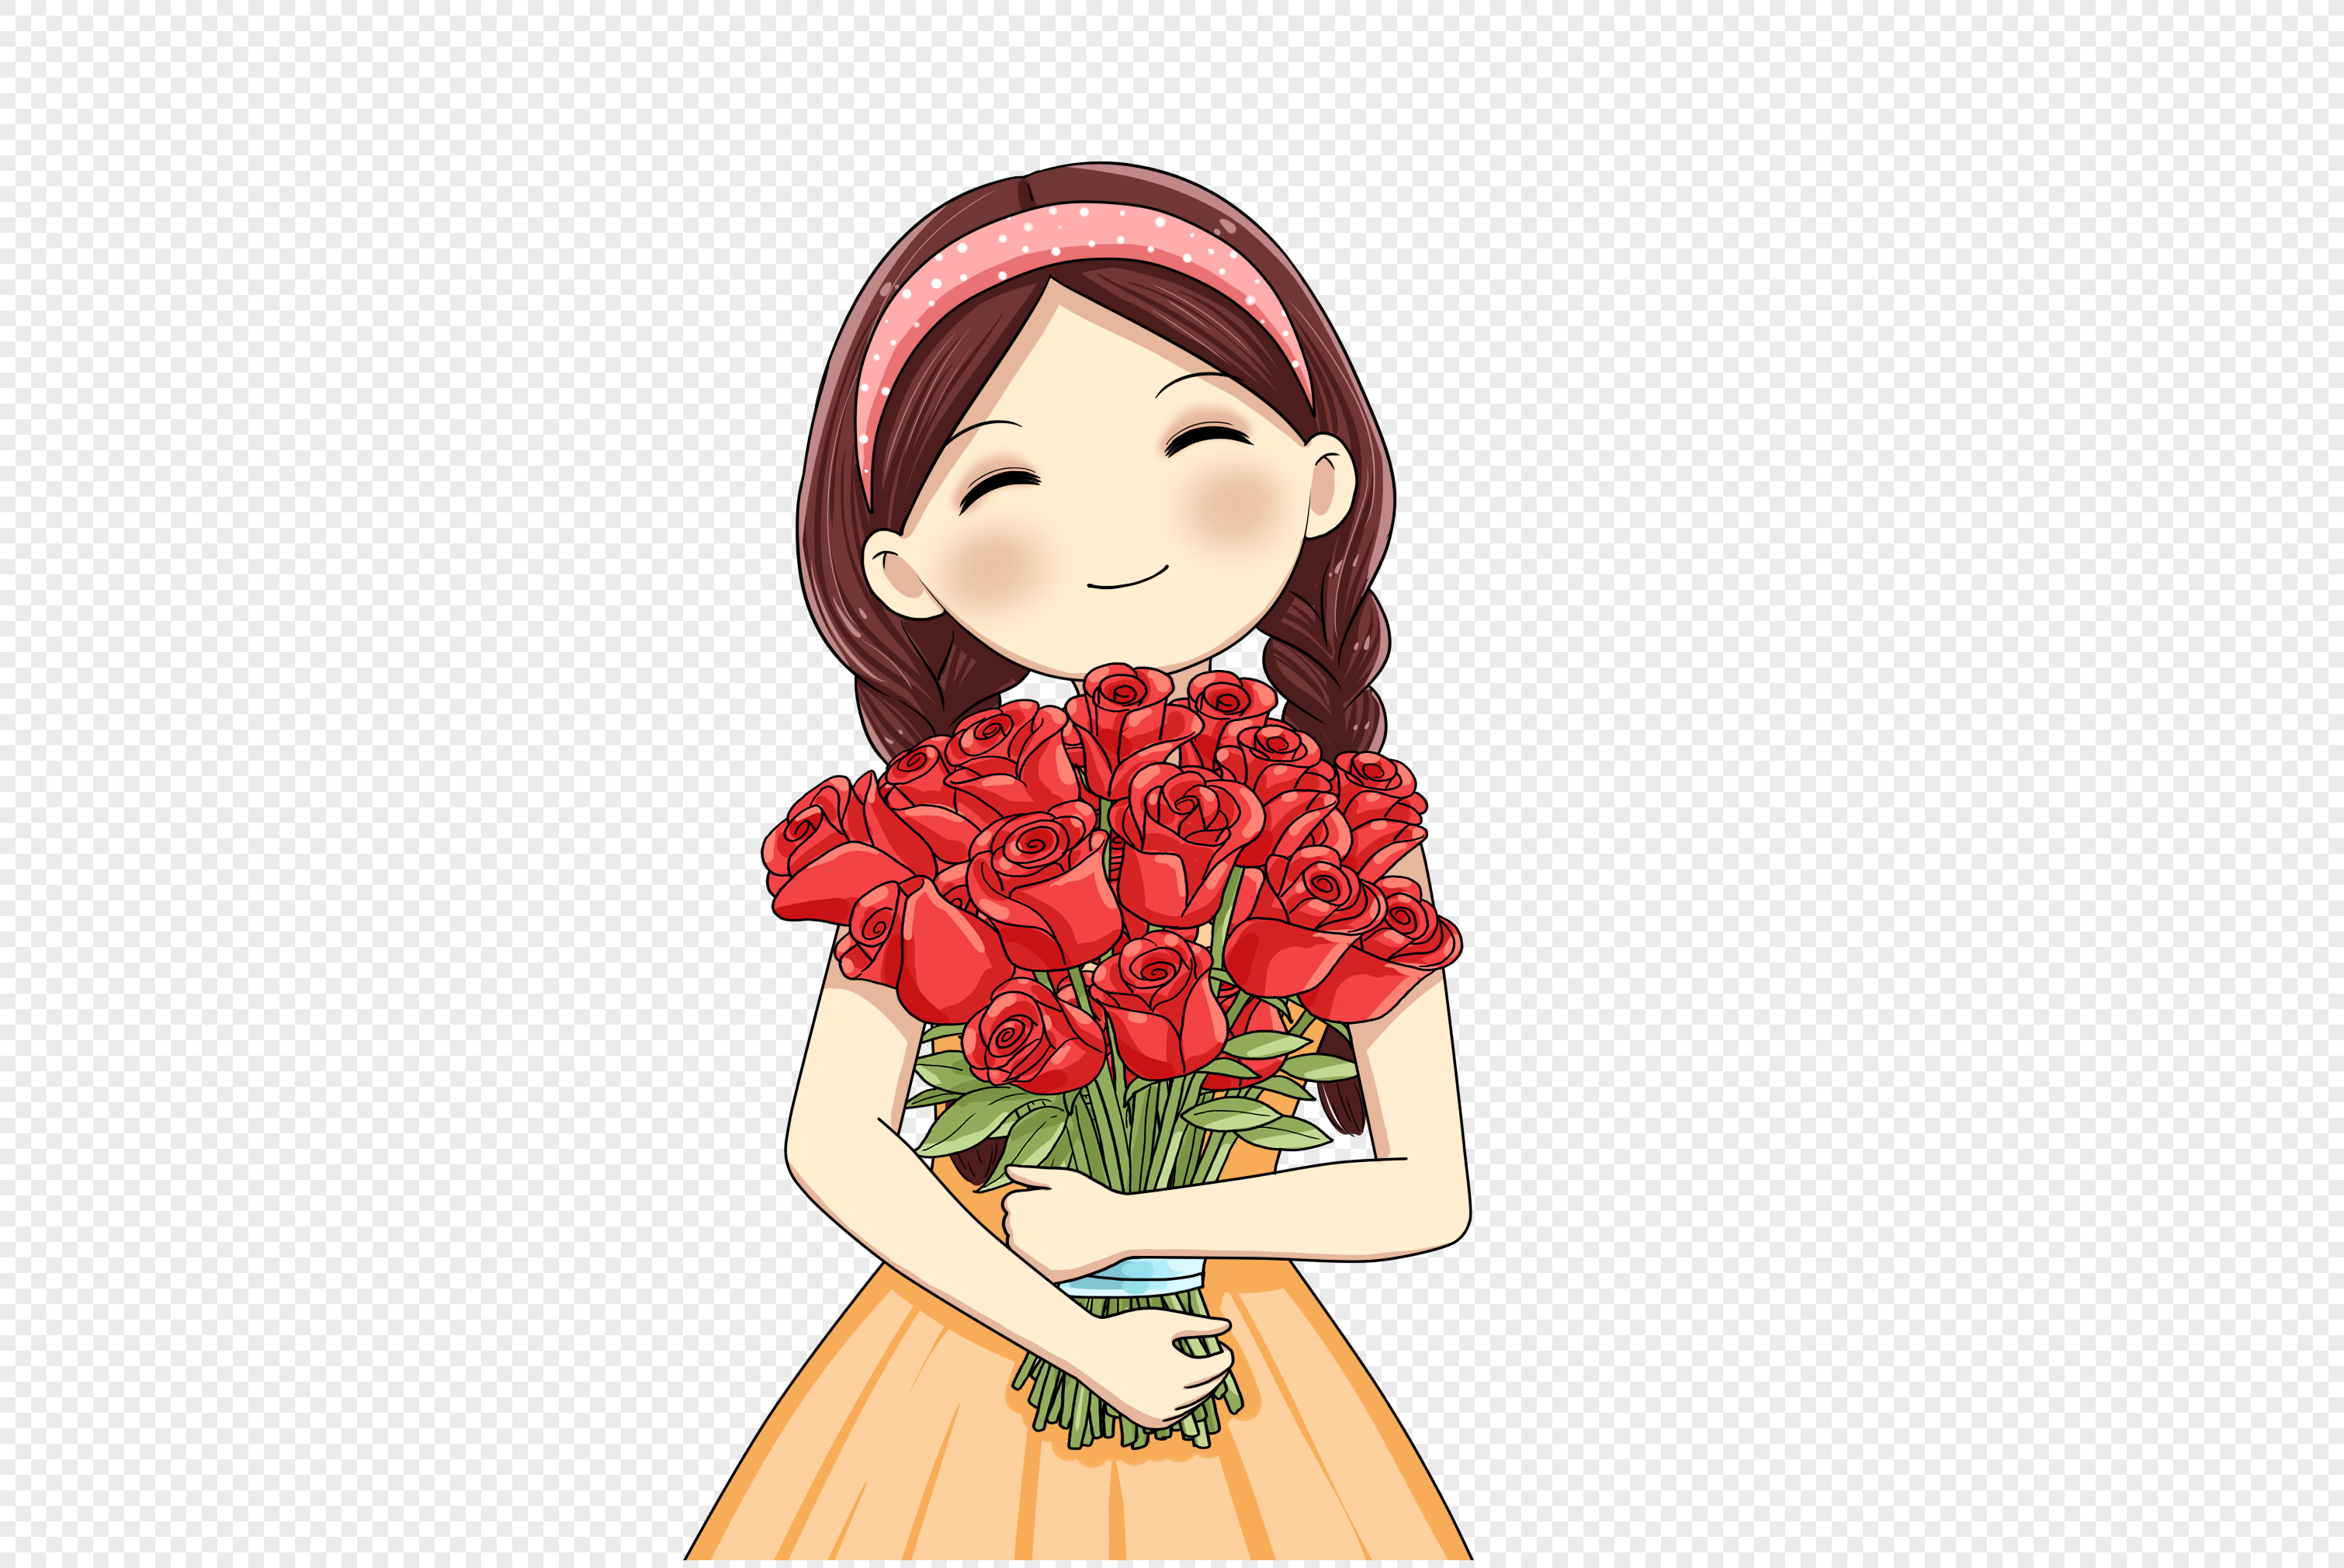 Bạn đã từng thấy bộ sưu tập bó hoa PNG với hình ảnh của một cô gái đang nắm giữ chúng trên nền trong suốt? Sự kết hợp hoàn hảo giữa nét đẹp tươi trẻ của cô gái và sắc hoa tươi tràn đầy năng lượng sẽ khiến bạn mê mẩn.